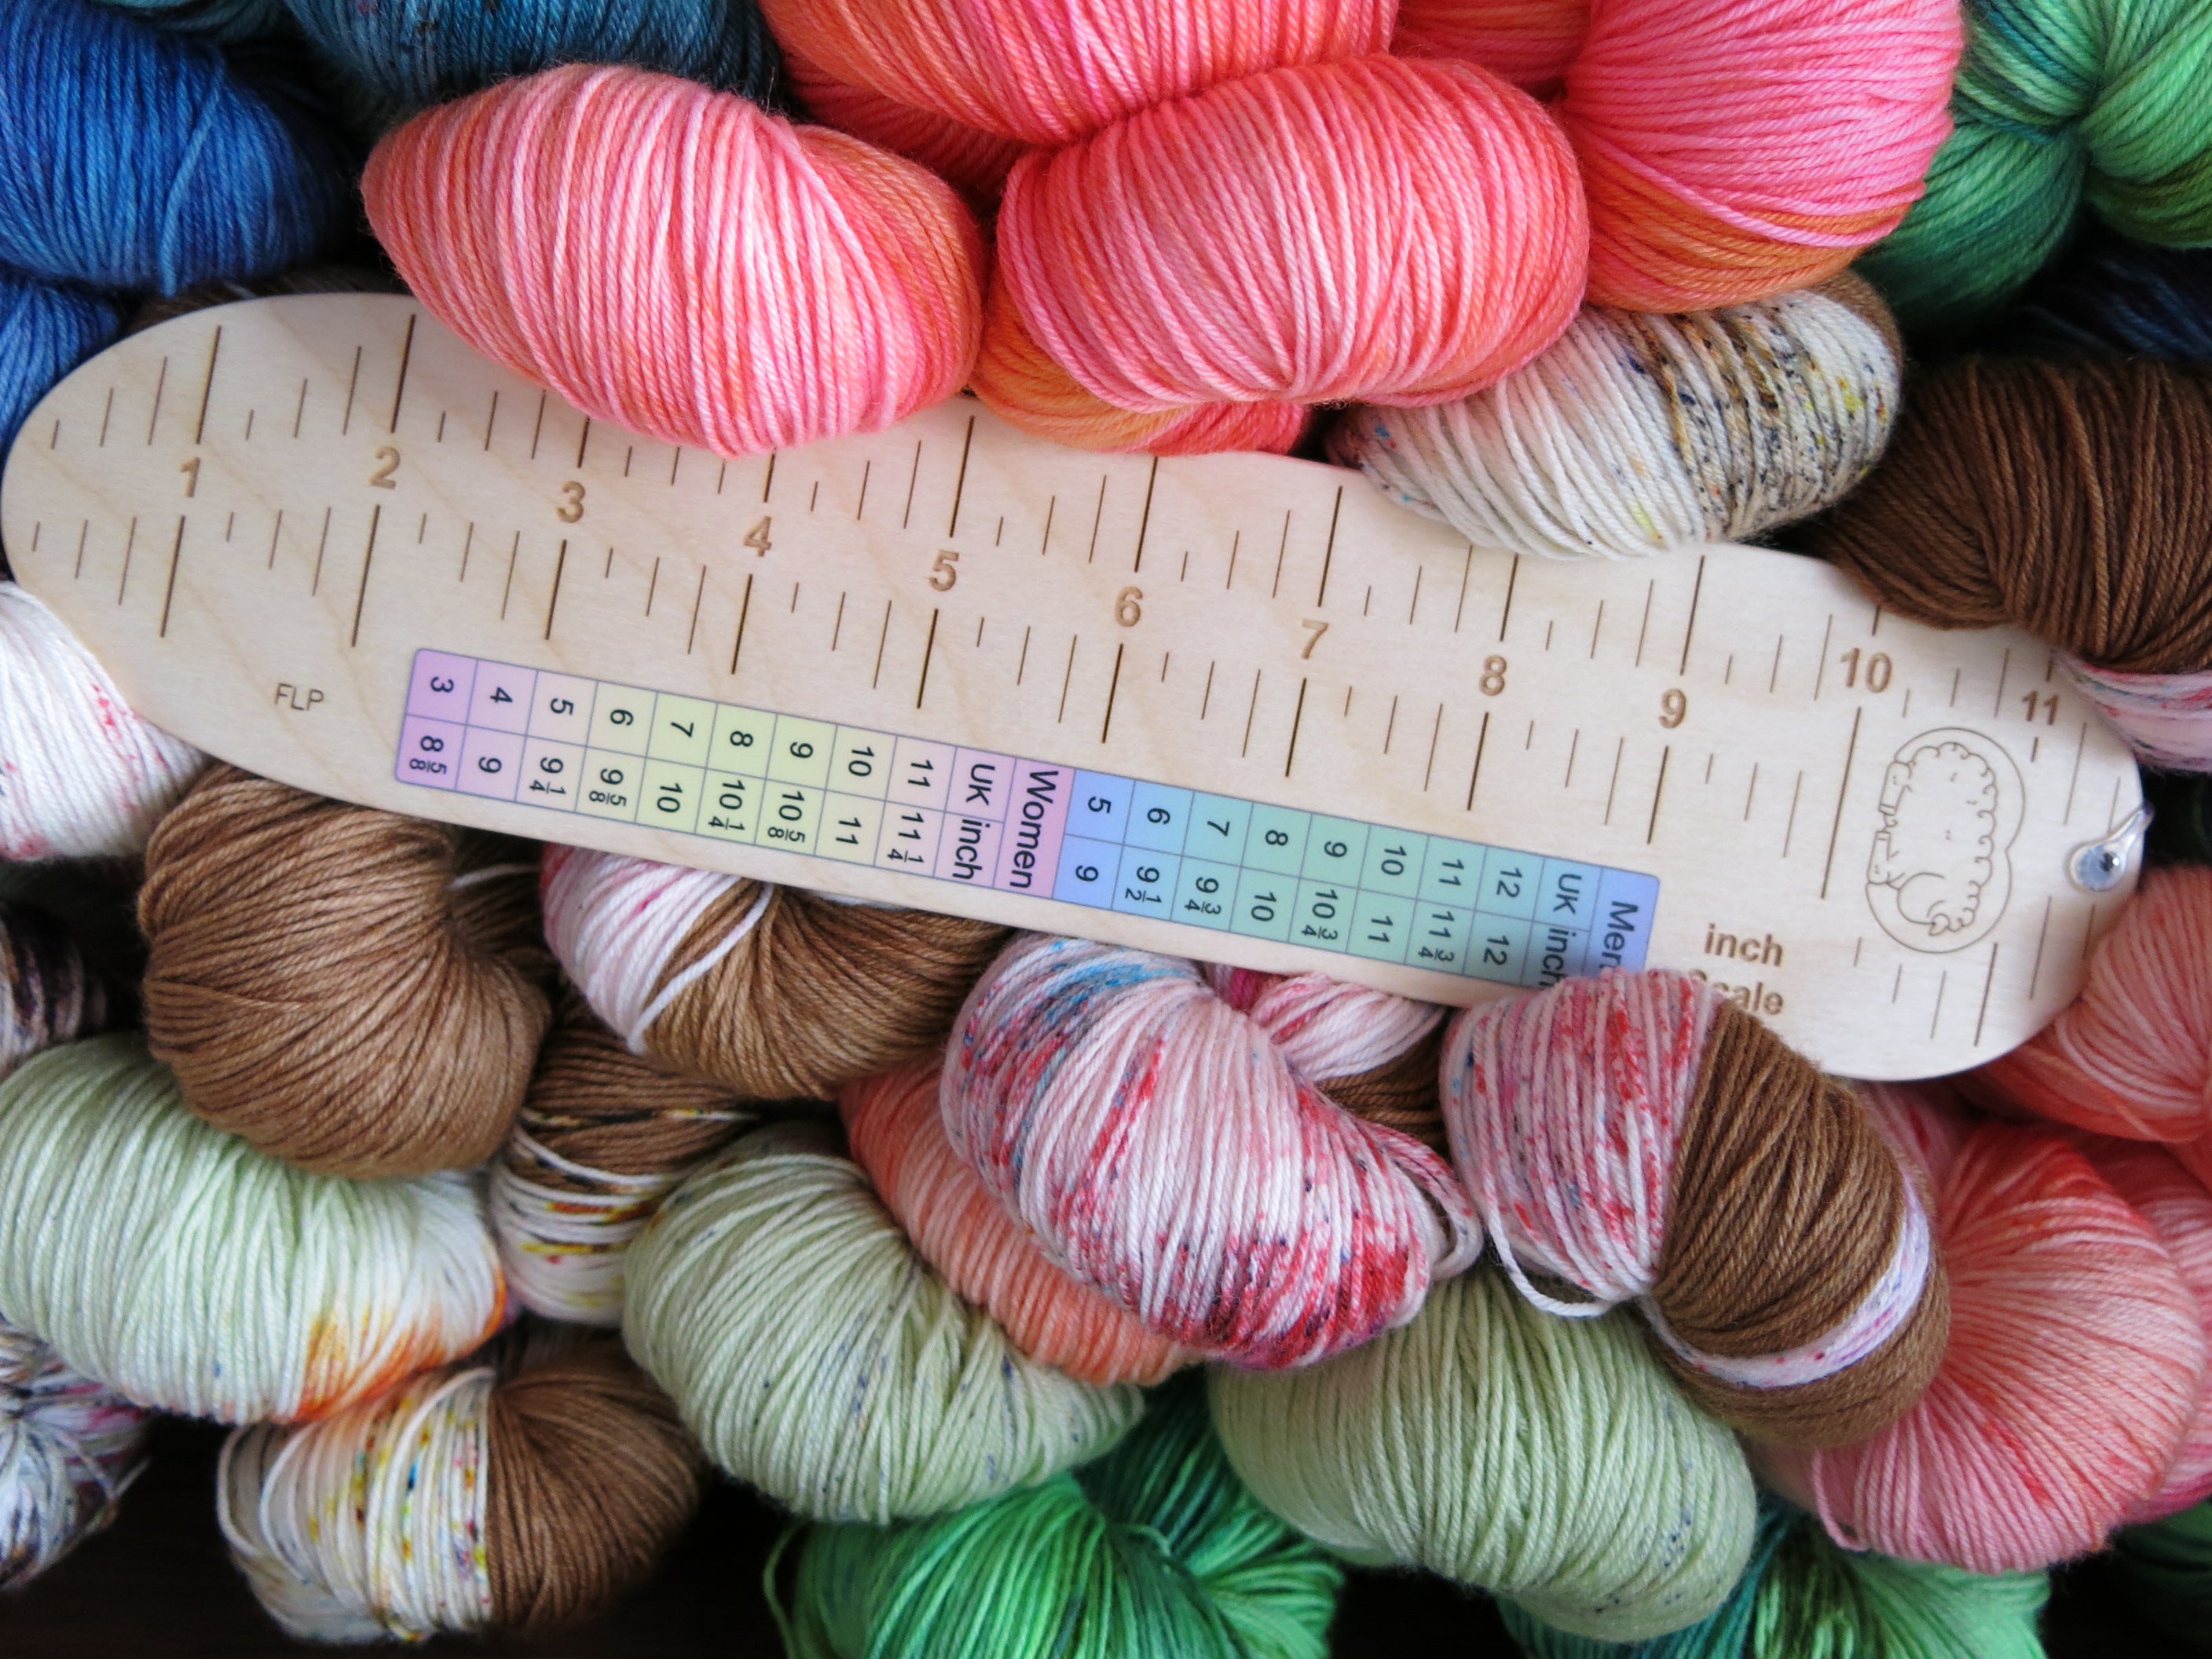 Sockers Rule UK made birch wood sock measuring ruler for knitting